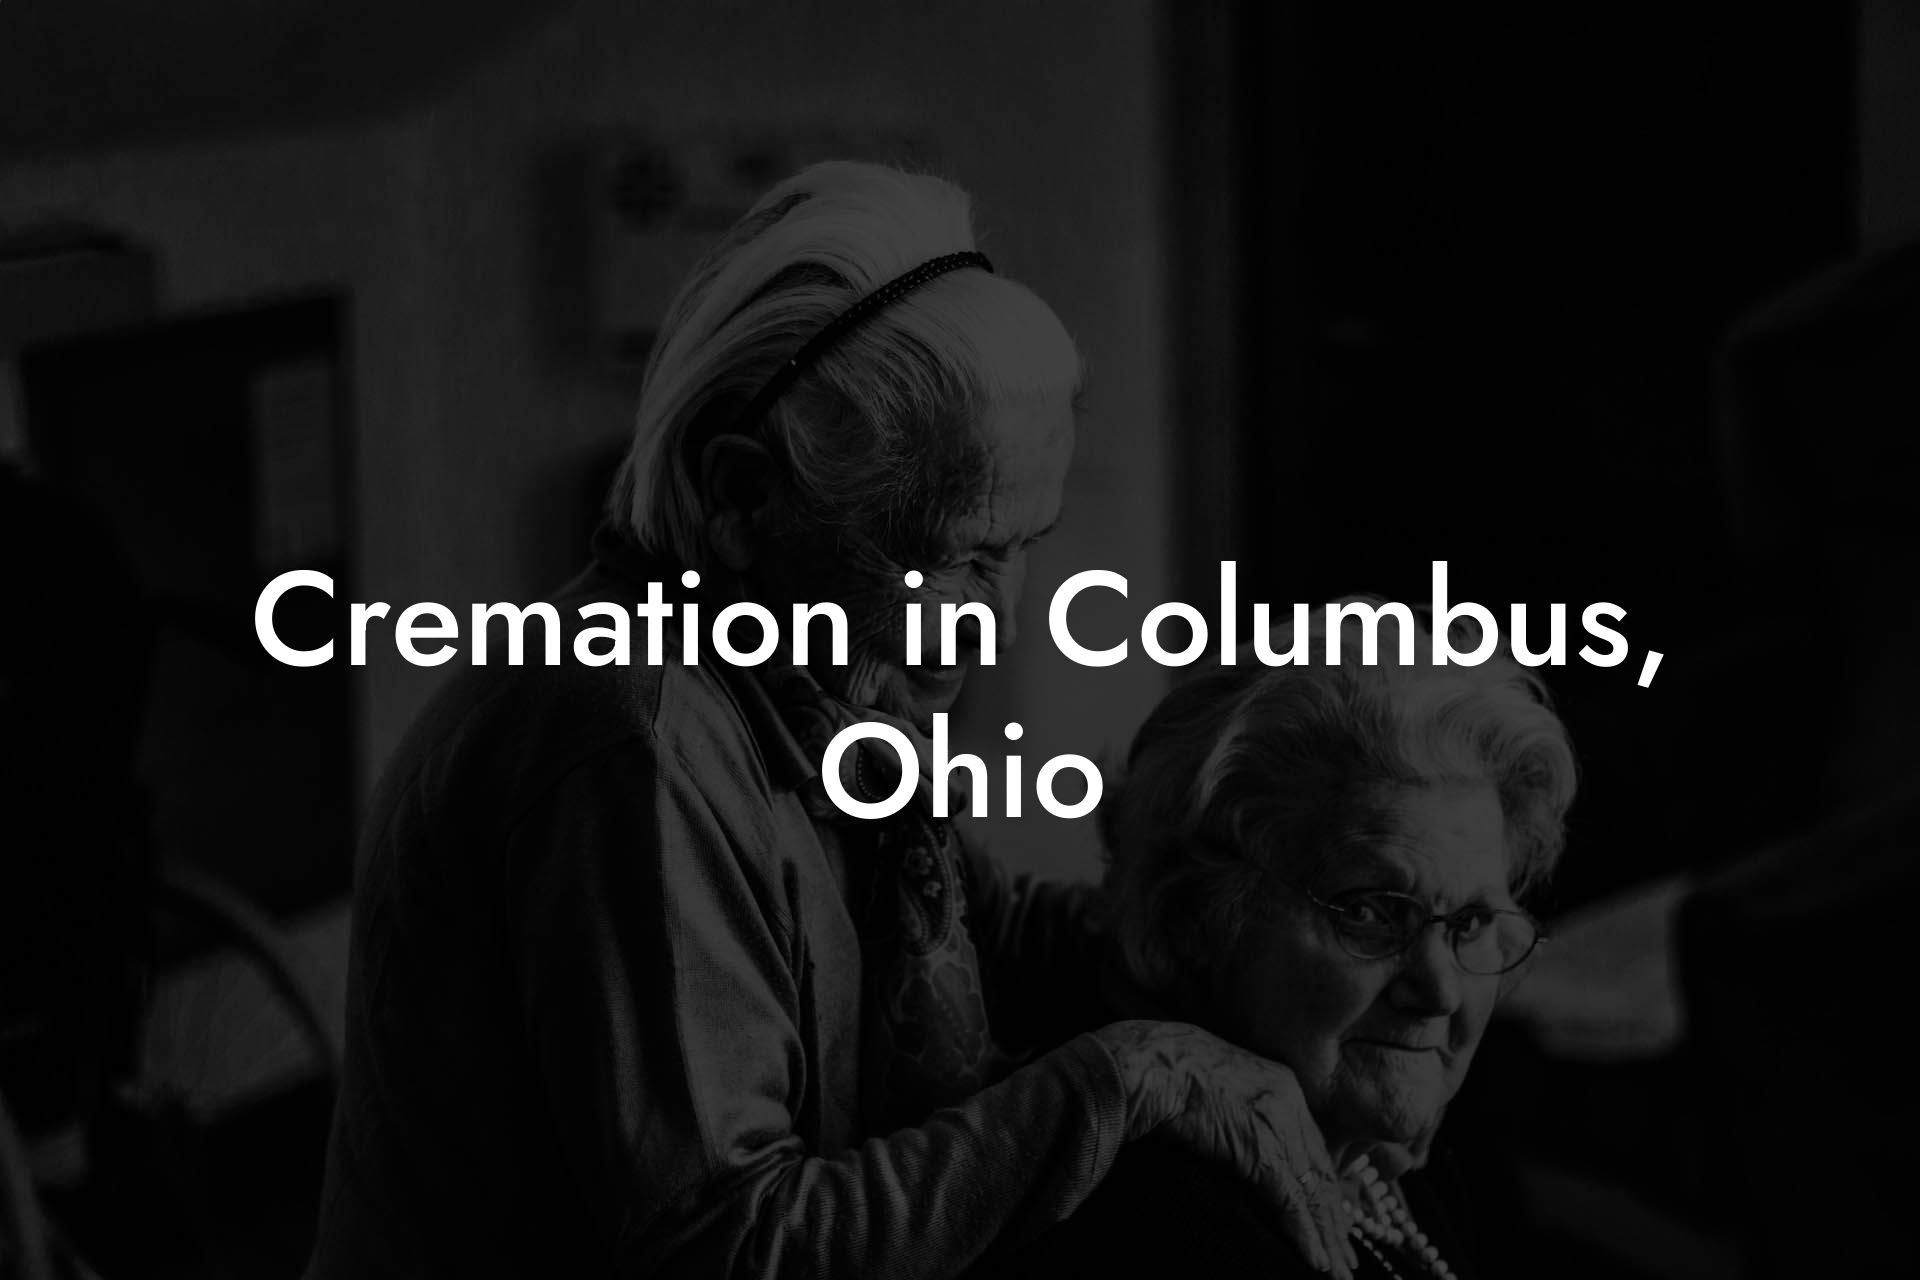 Cremation in Columbus, Ohio